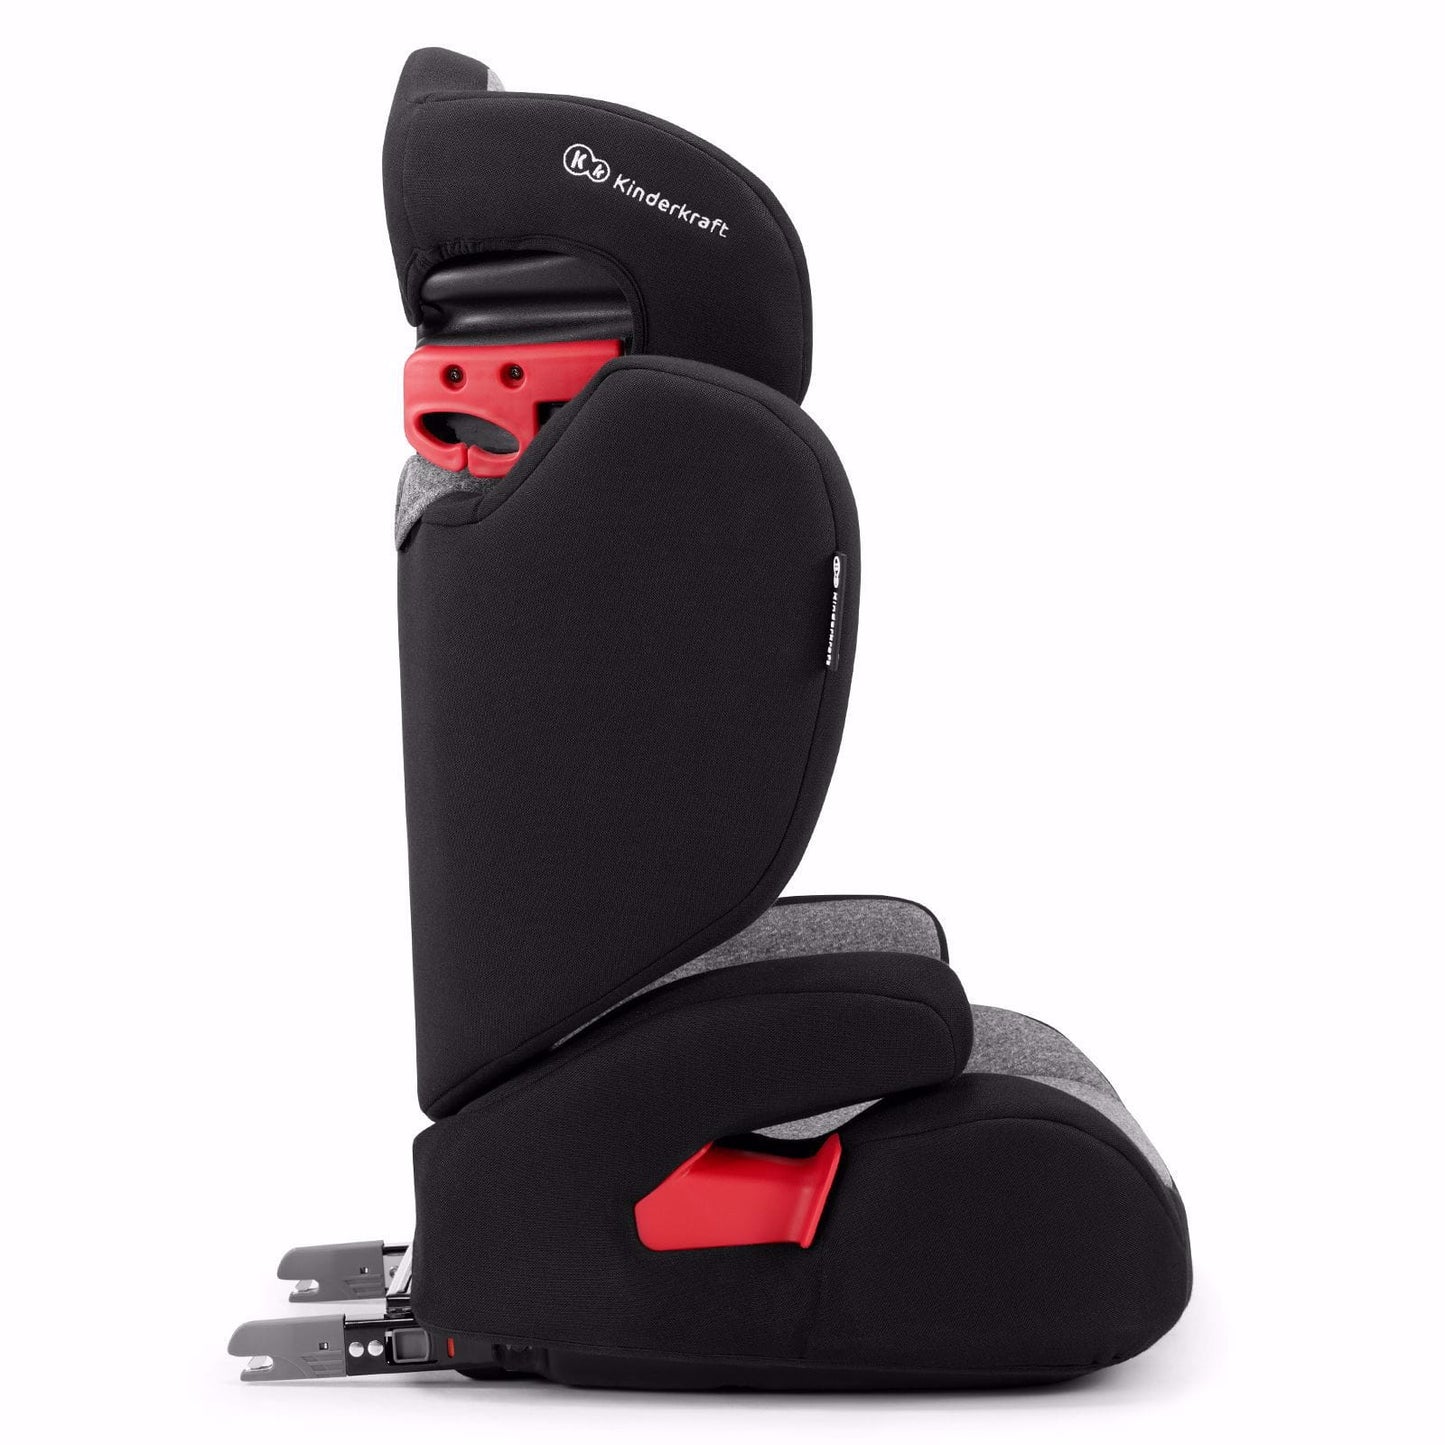 Kinderkraft Xpander Car Seat - Black